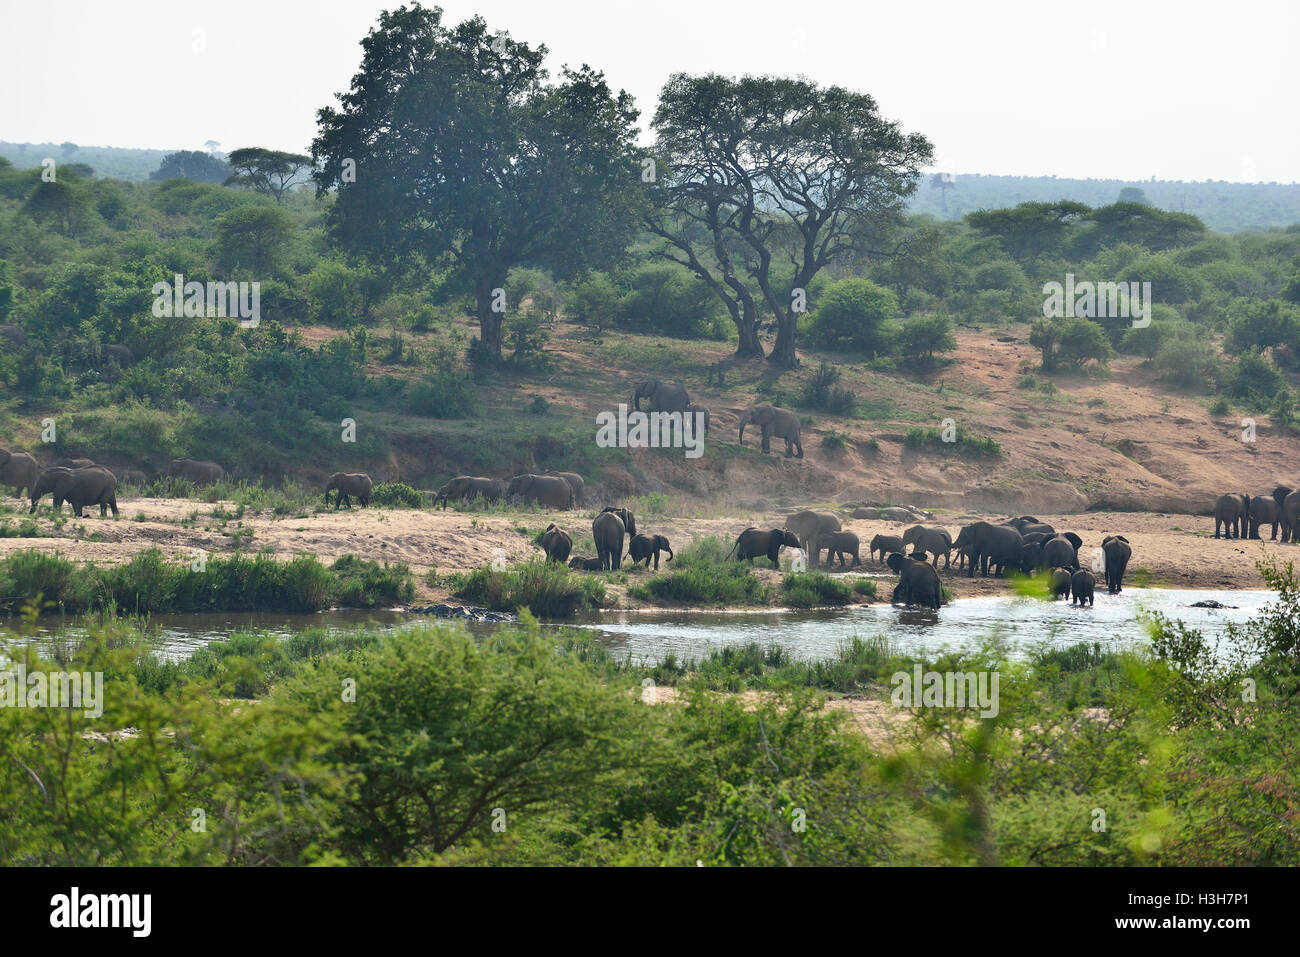 Troupeau d'éléphants (jusqu'à 52 personnes) traversant une traversée en eau basse sur la rivière Sabie, parc national Kruger, Afrique du Sud Banque D'Images